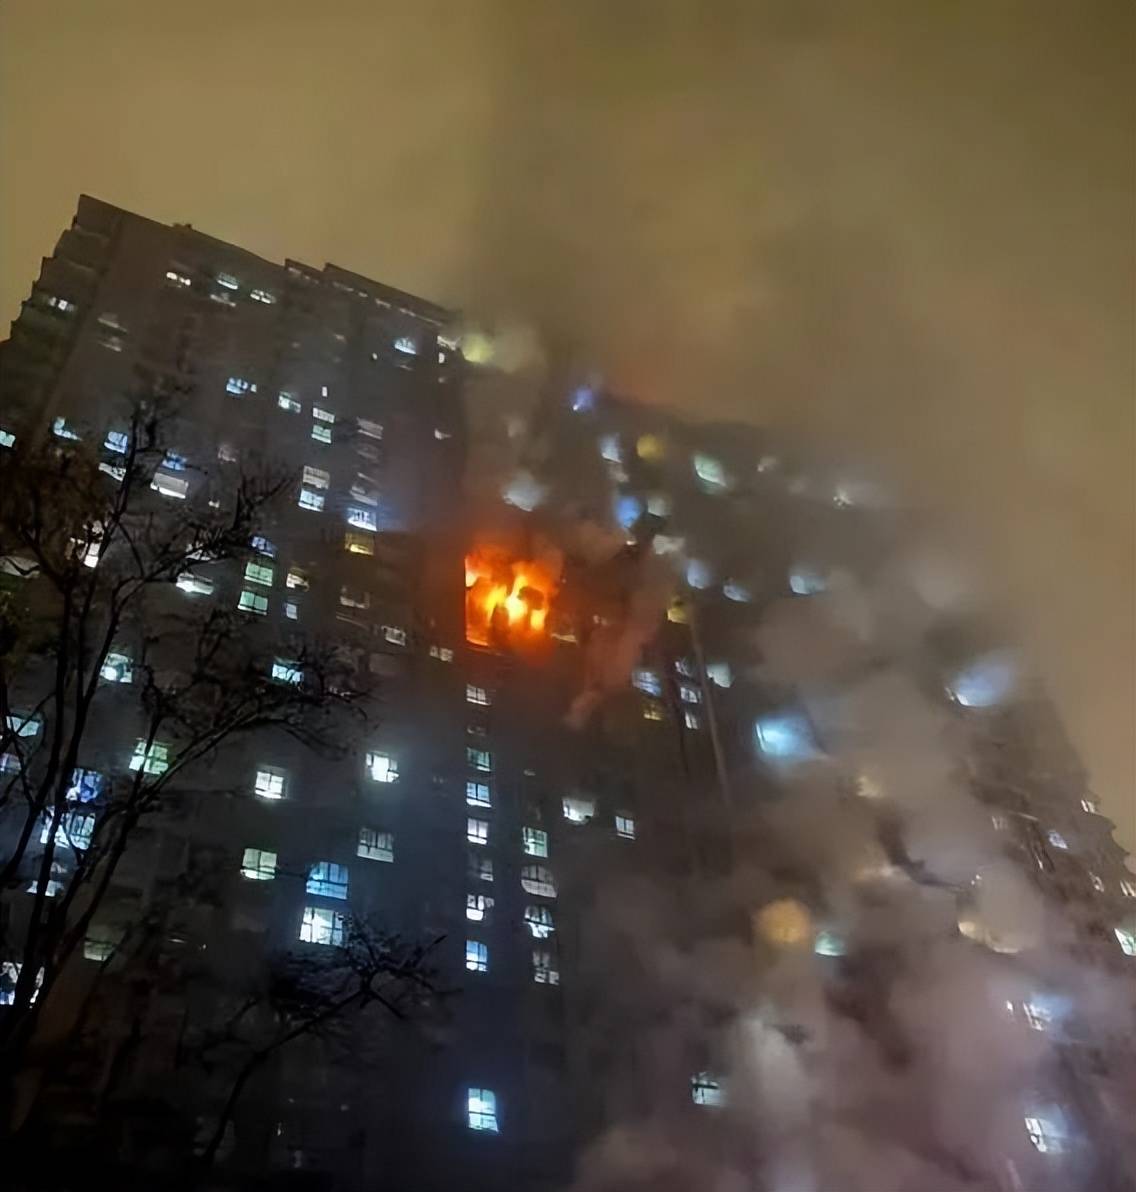 两天两起高楼火灾,致15人遇难!高层失火如何安全逃生?